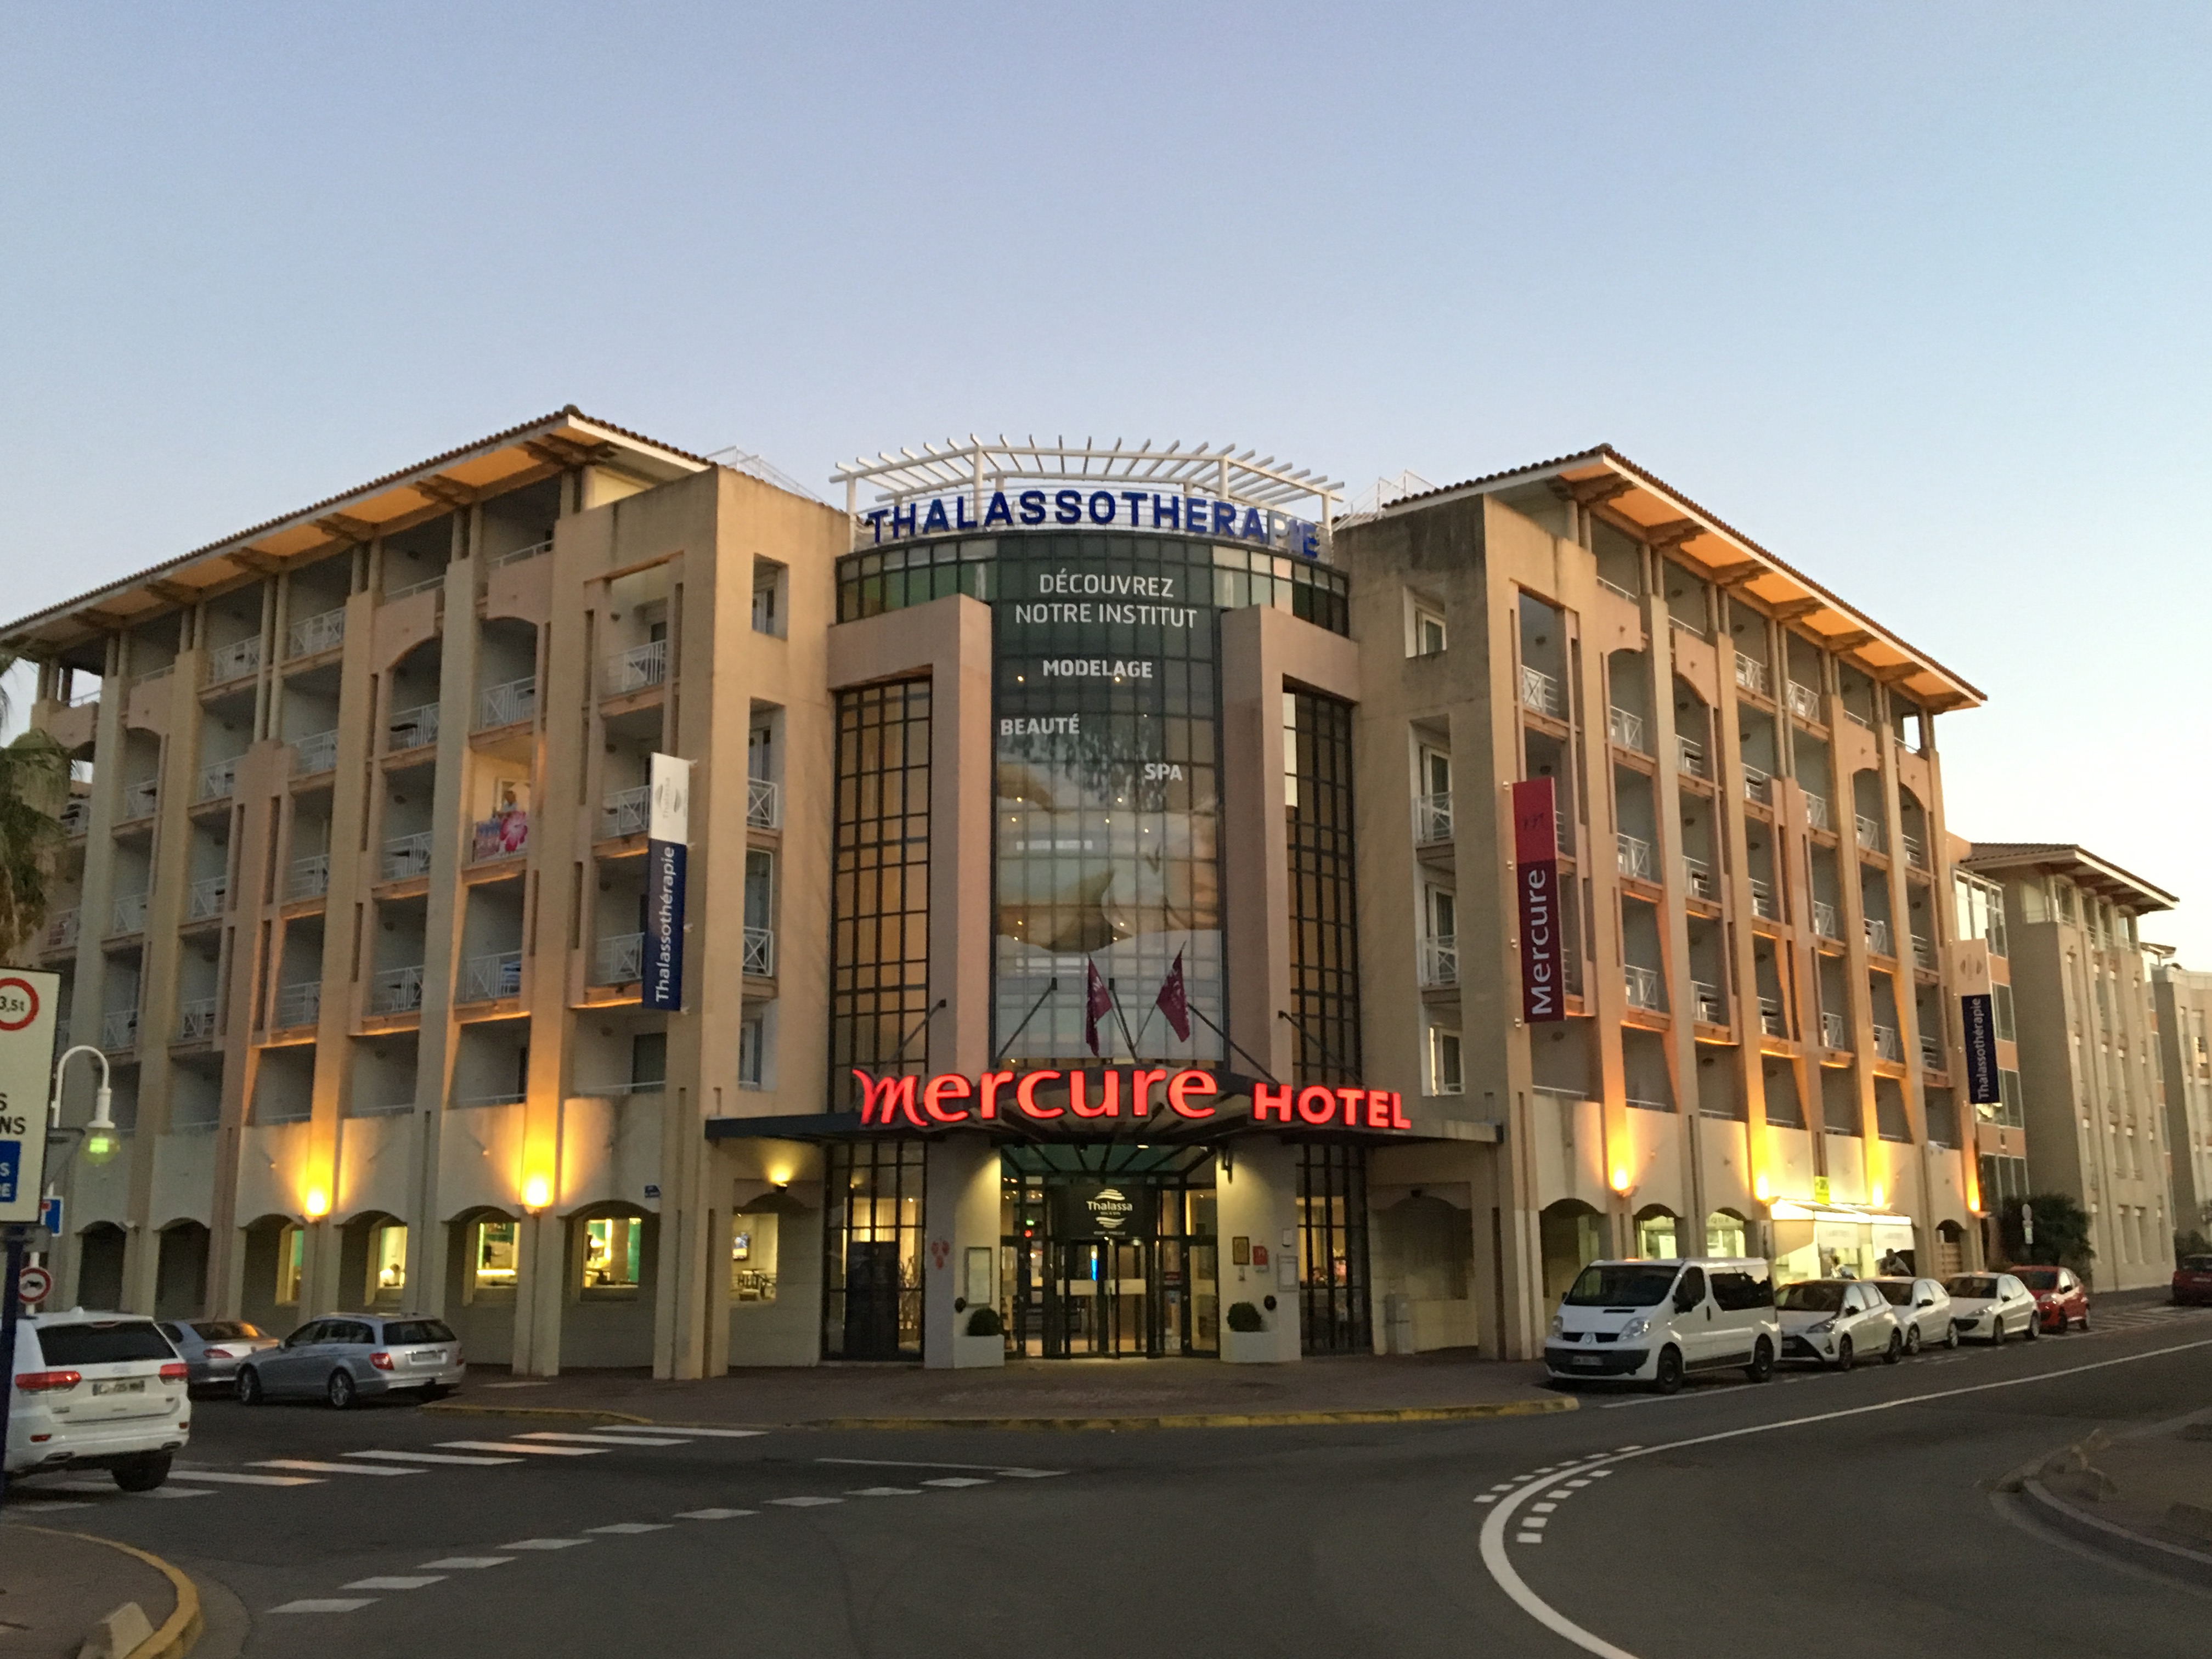 Review Mercure Thalassa Port-Fréjus (France) - Hotel Reviews